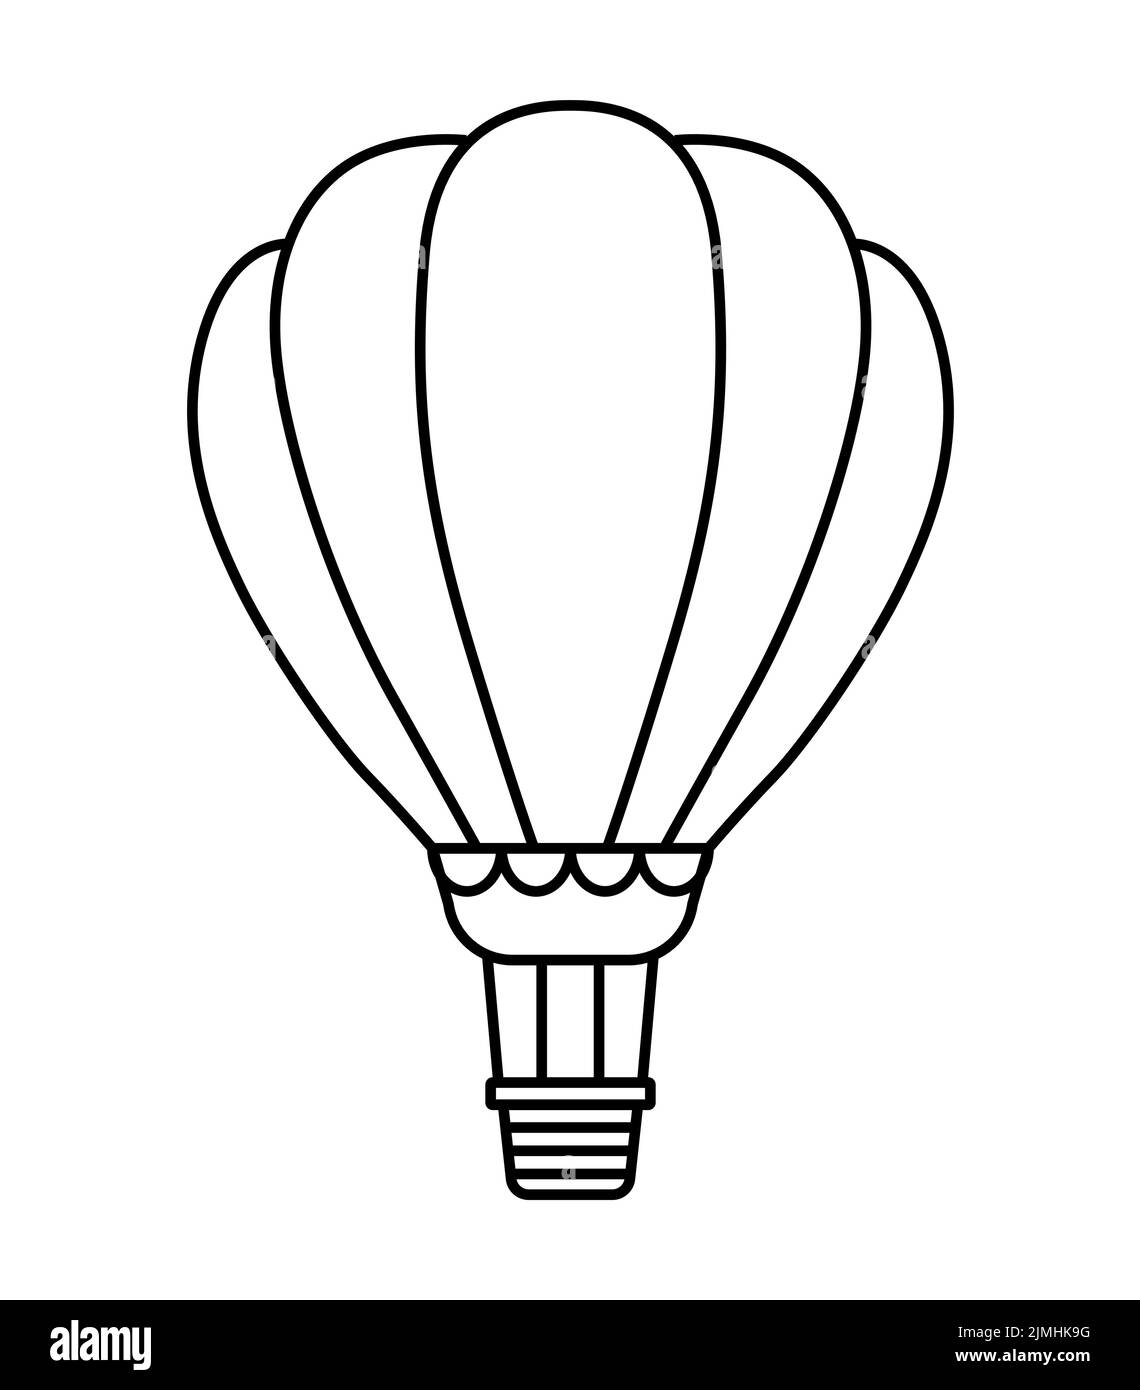 Hot air balloon line art icon Stock Vector